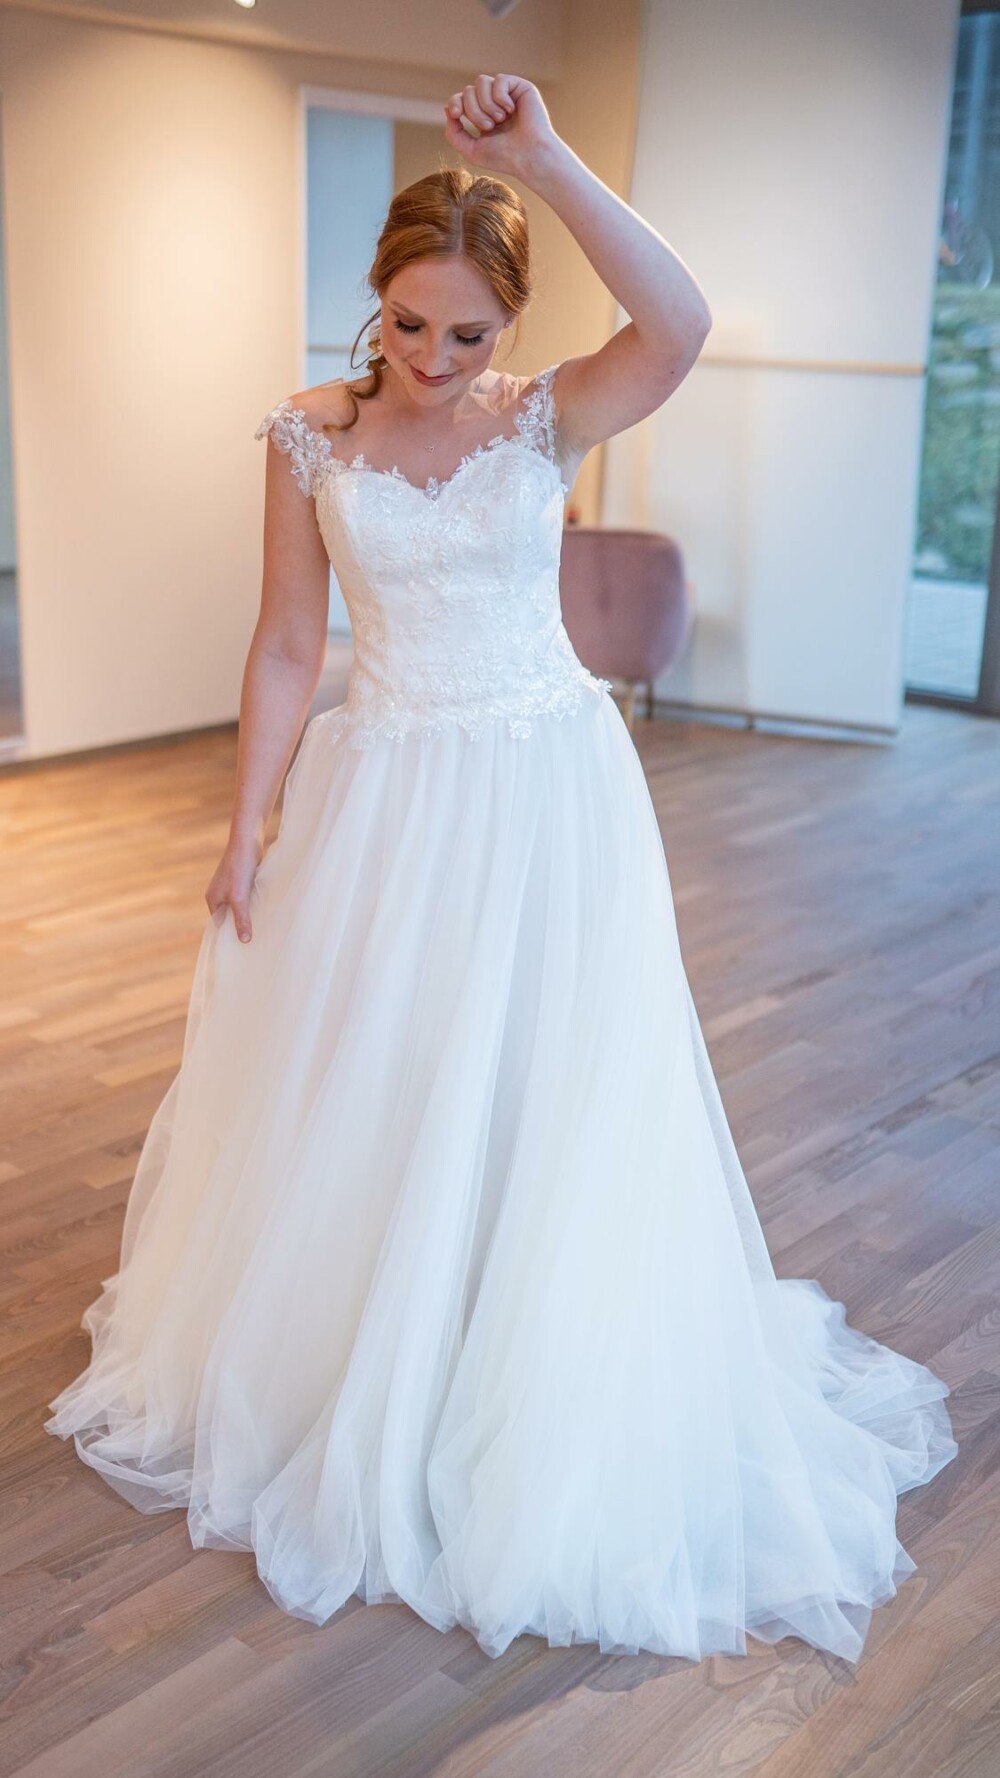 bridalicious Alyssa - hochzeitsrausch Brautmoden Webshop